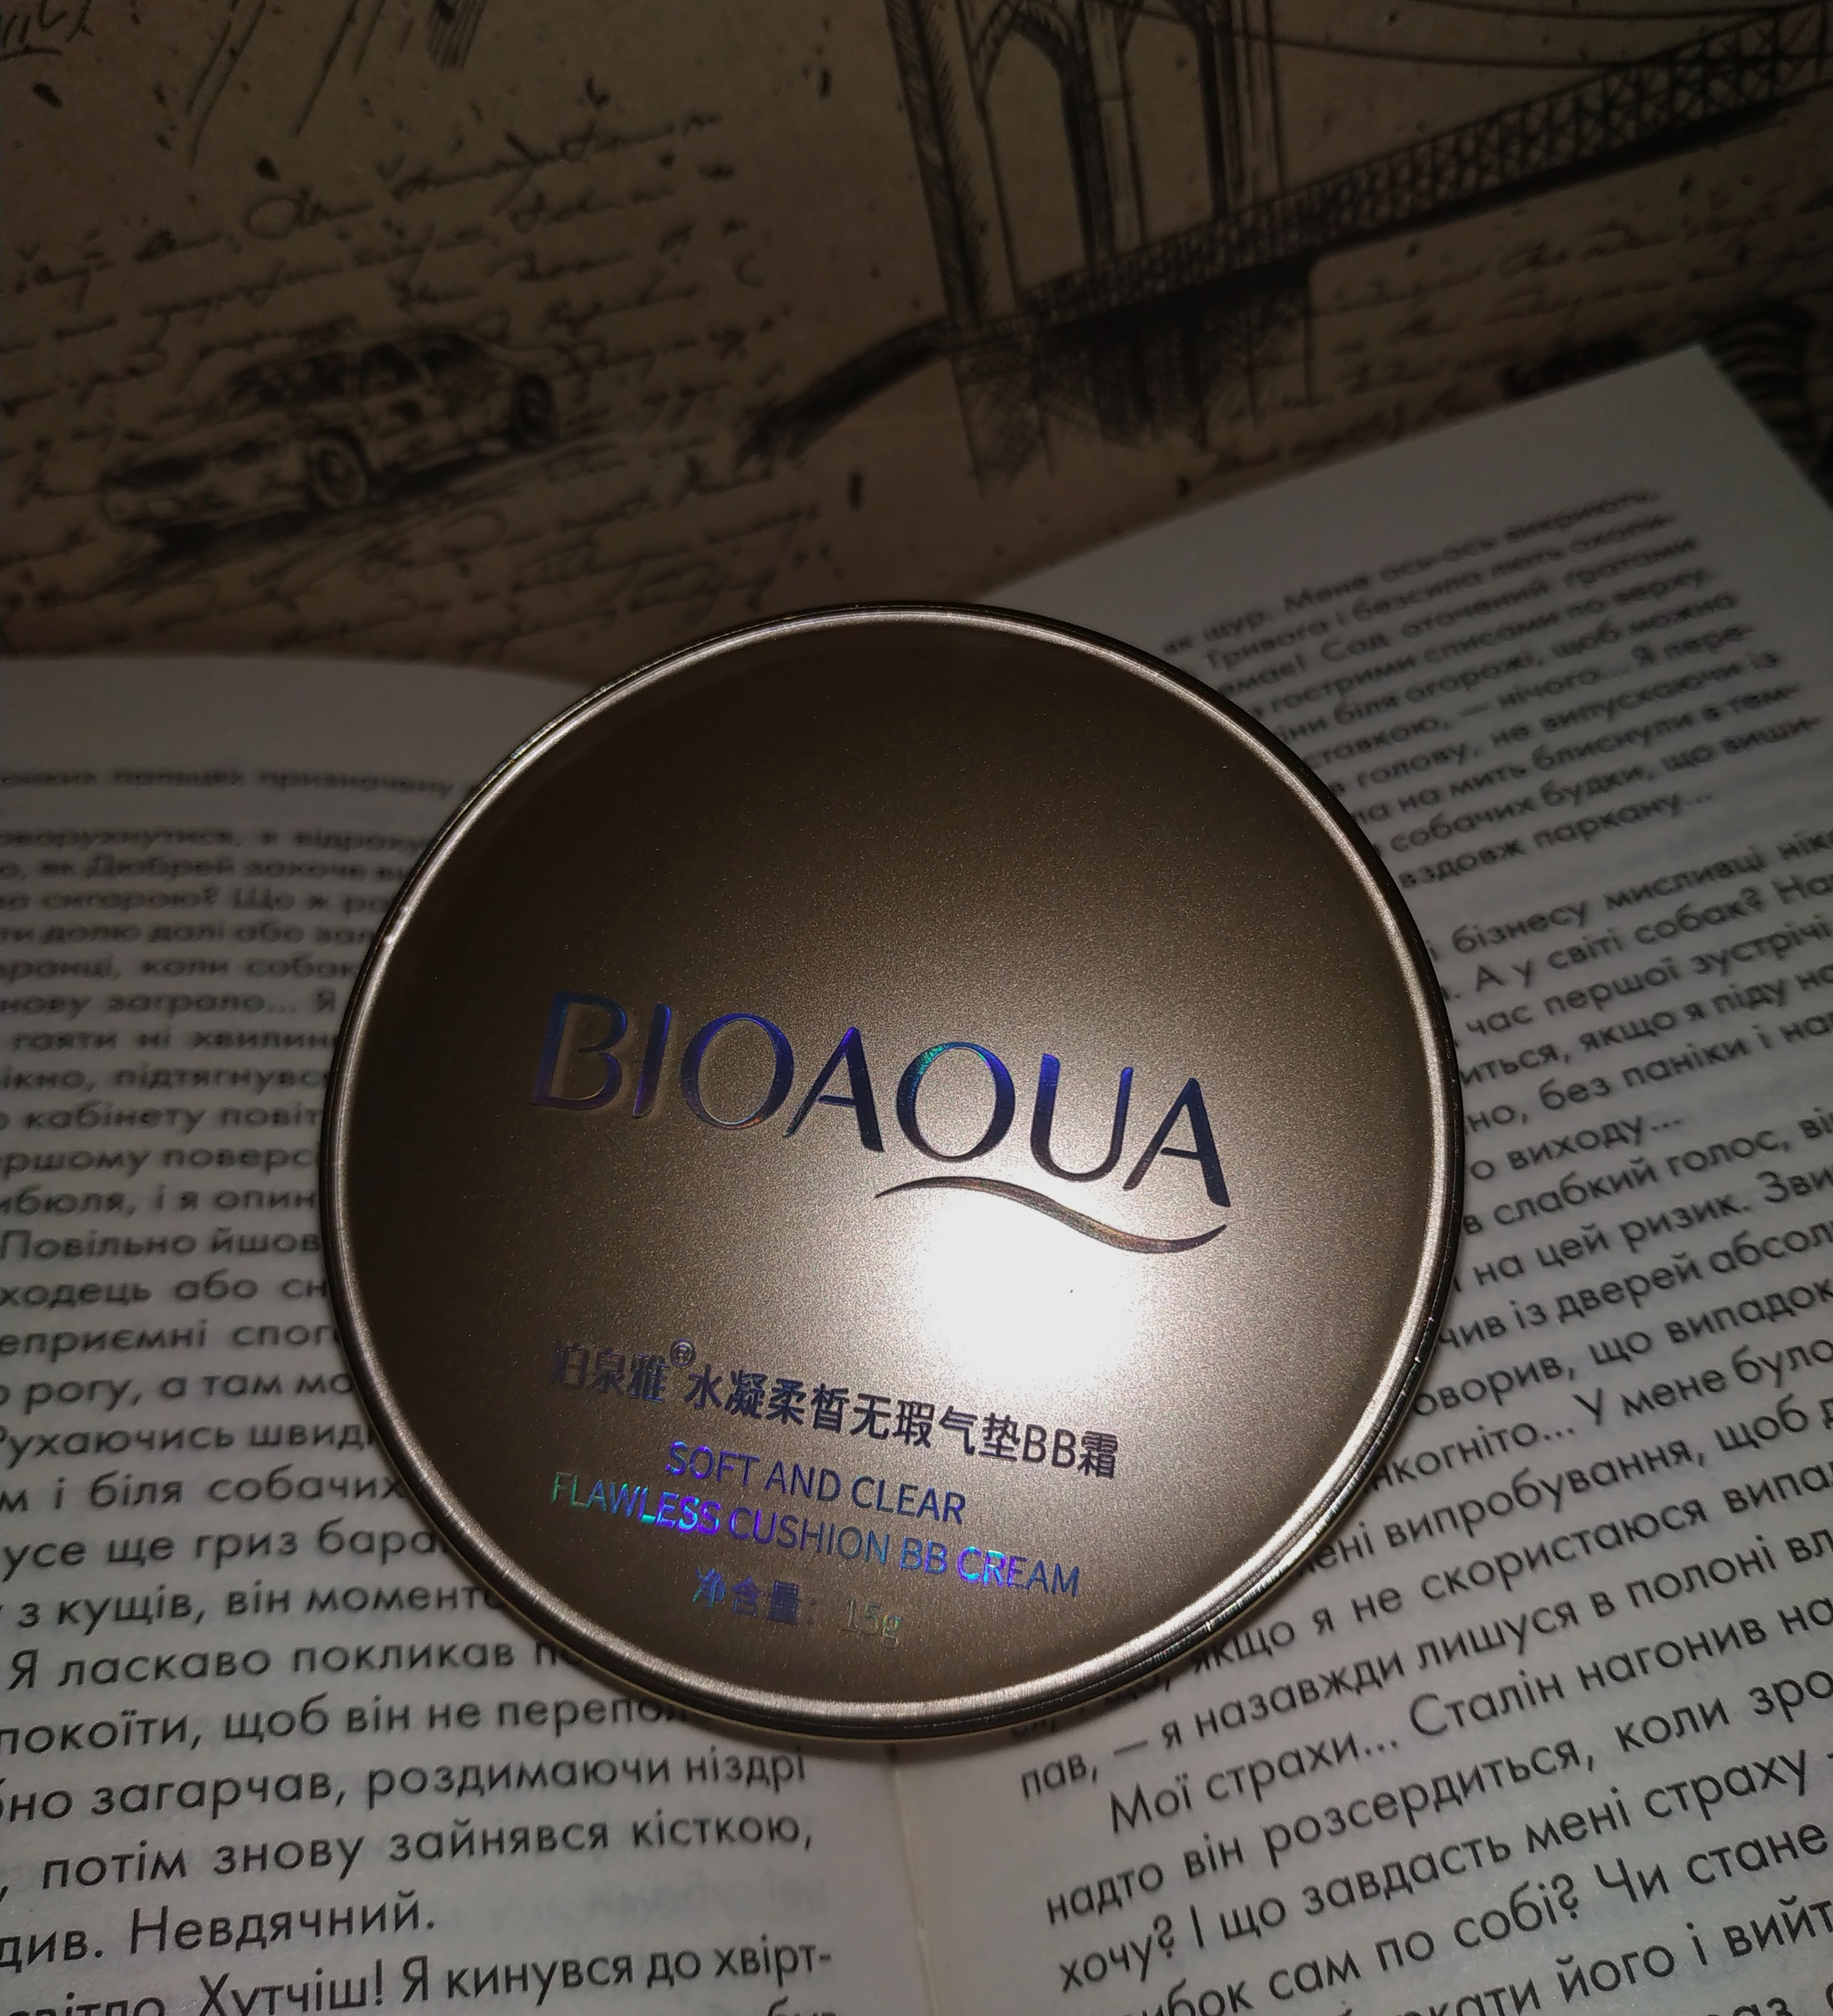 Бюджетний кушон від BioАqua. Раджу чи ні?